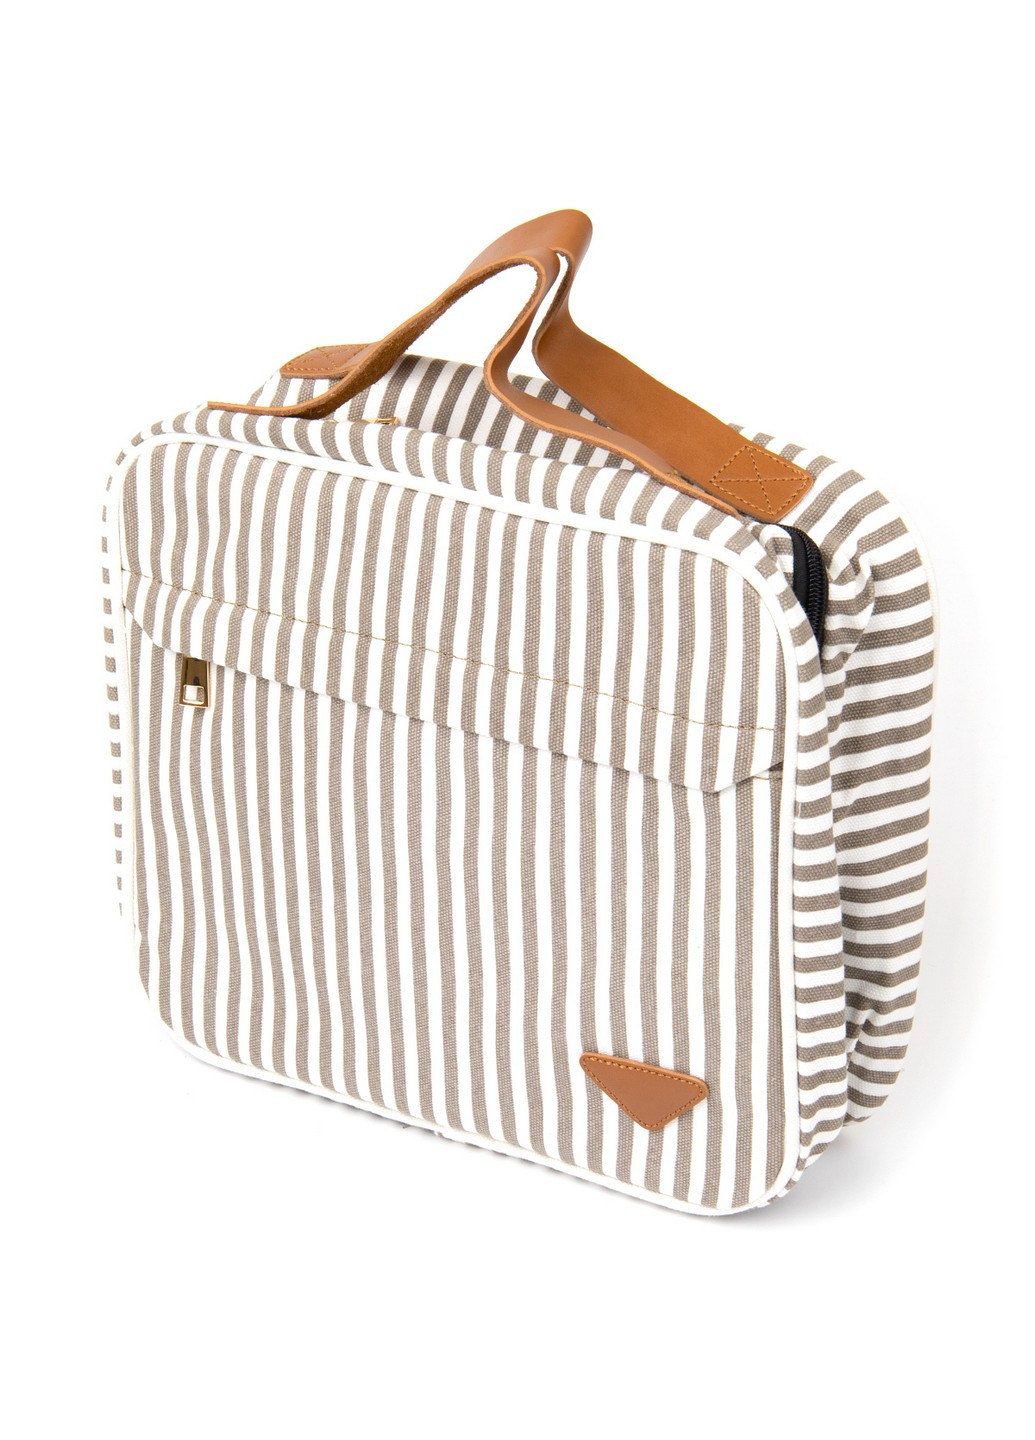 Органайзер-сумка для путешествий Vintage (252086805)